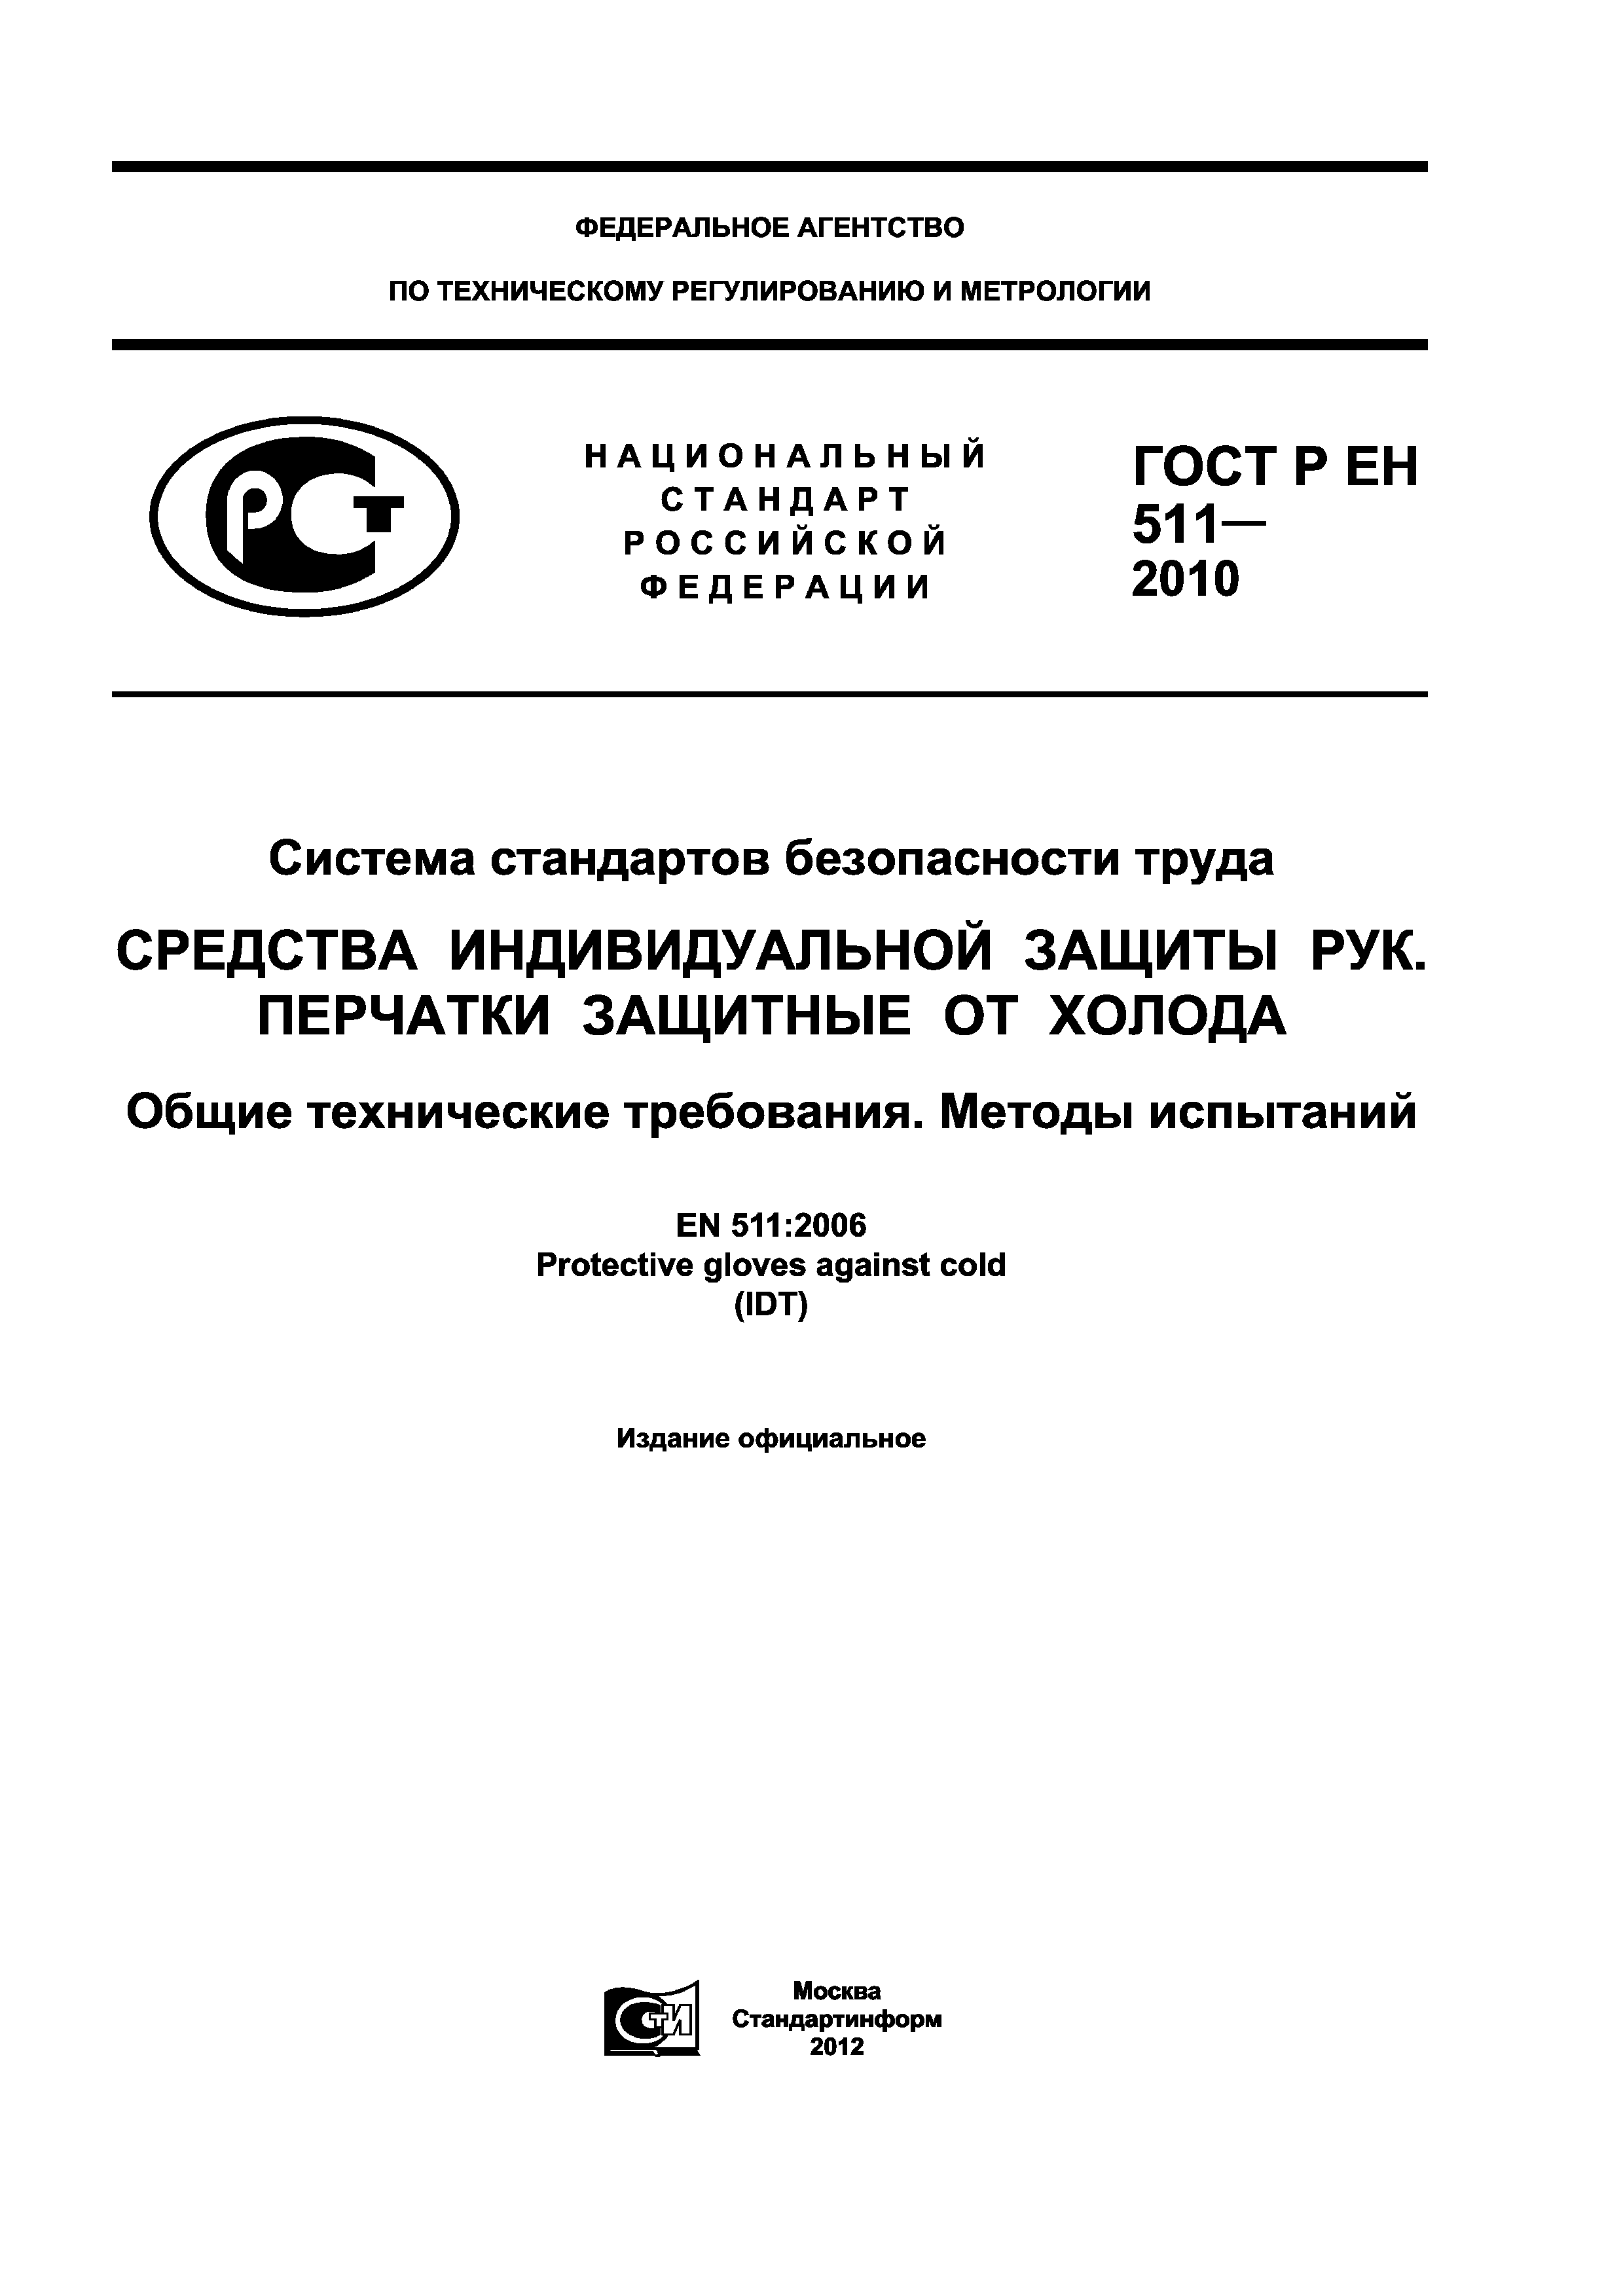 ГОСТ Р ЕН 511-2010